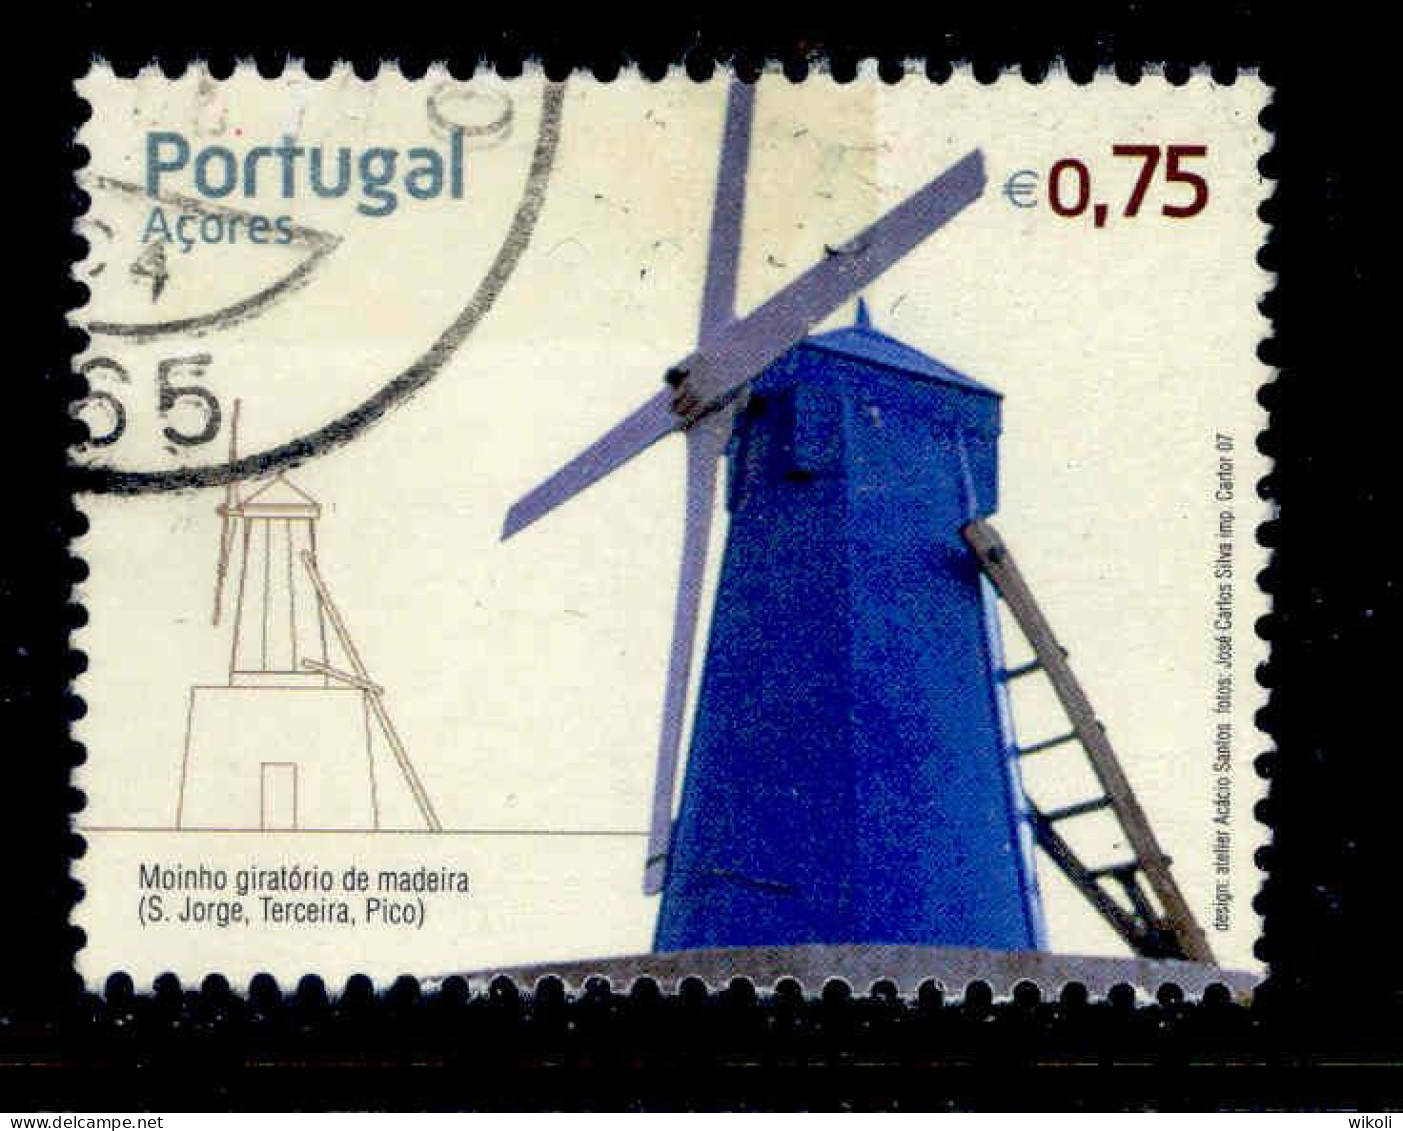 ! ! Portugal - 2007 Wind Mills - Af. 3552 - Used - Usati